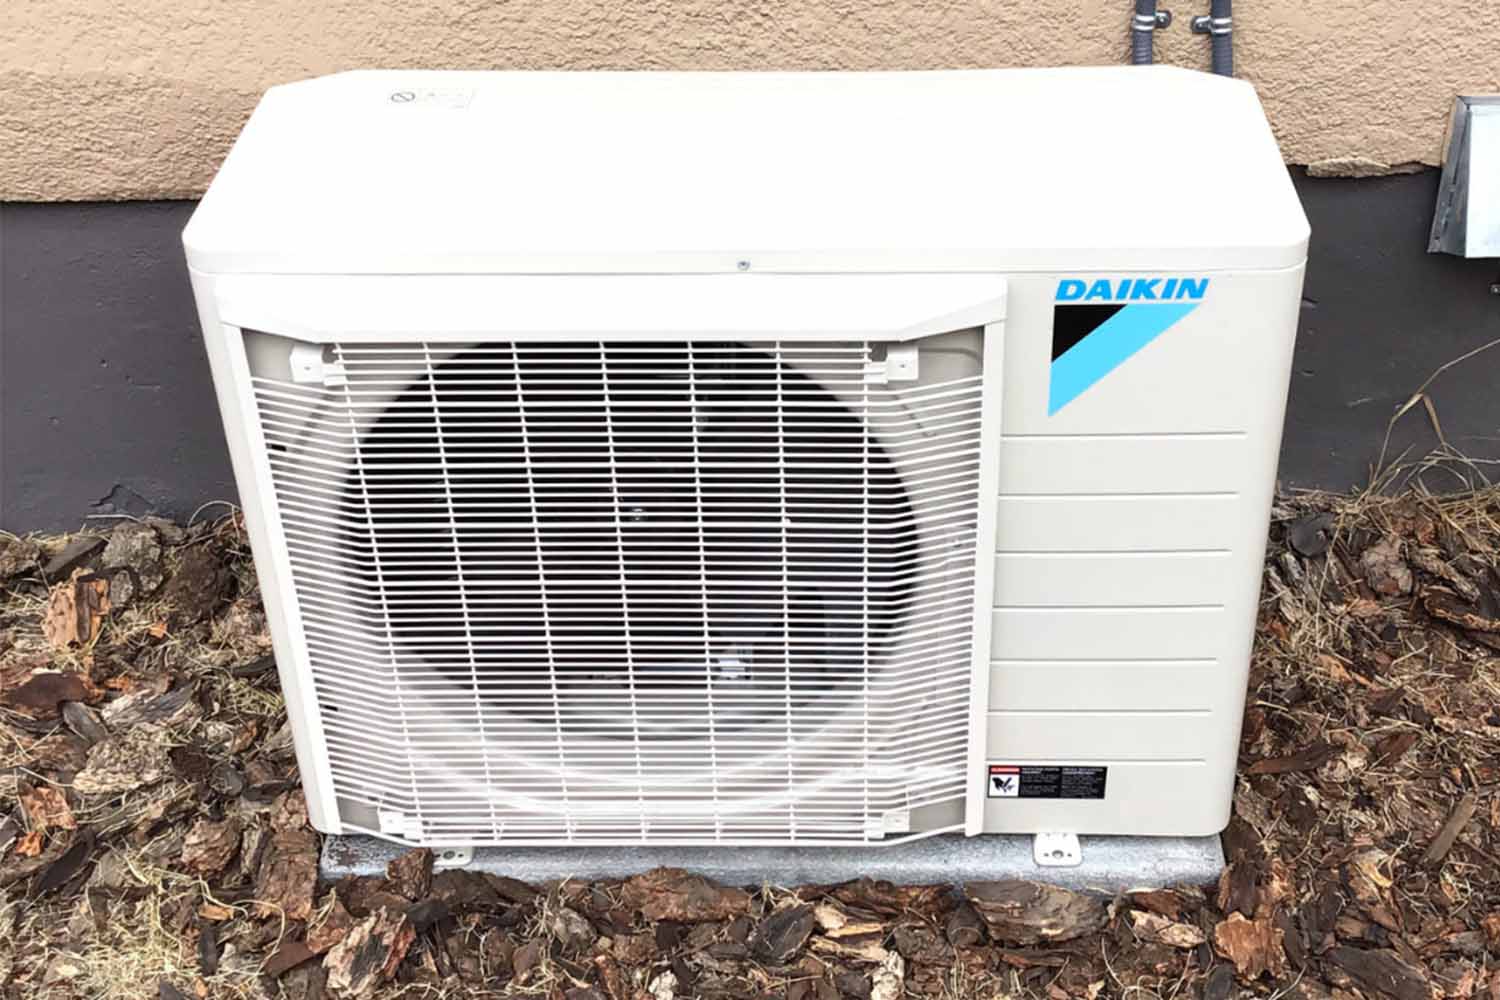 A Daikin air conditioner needing repair in Calgary